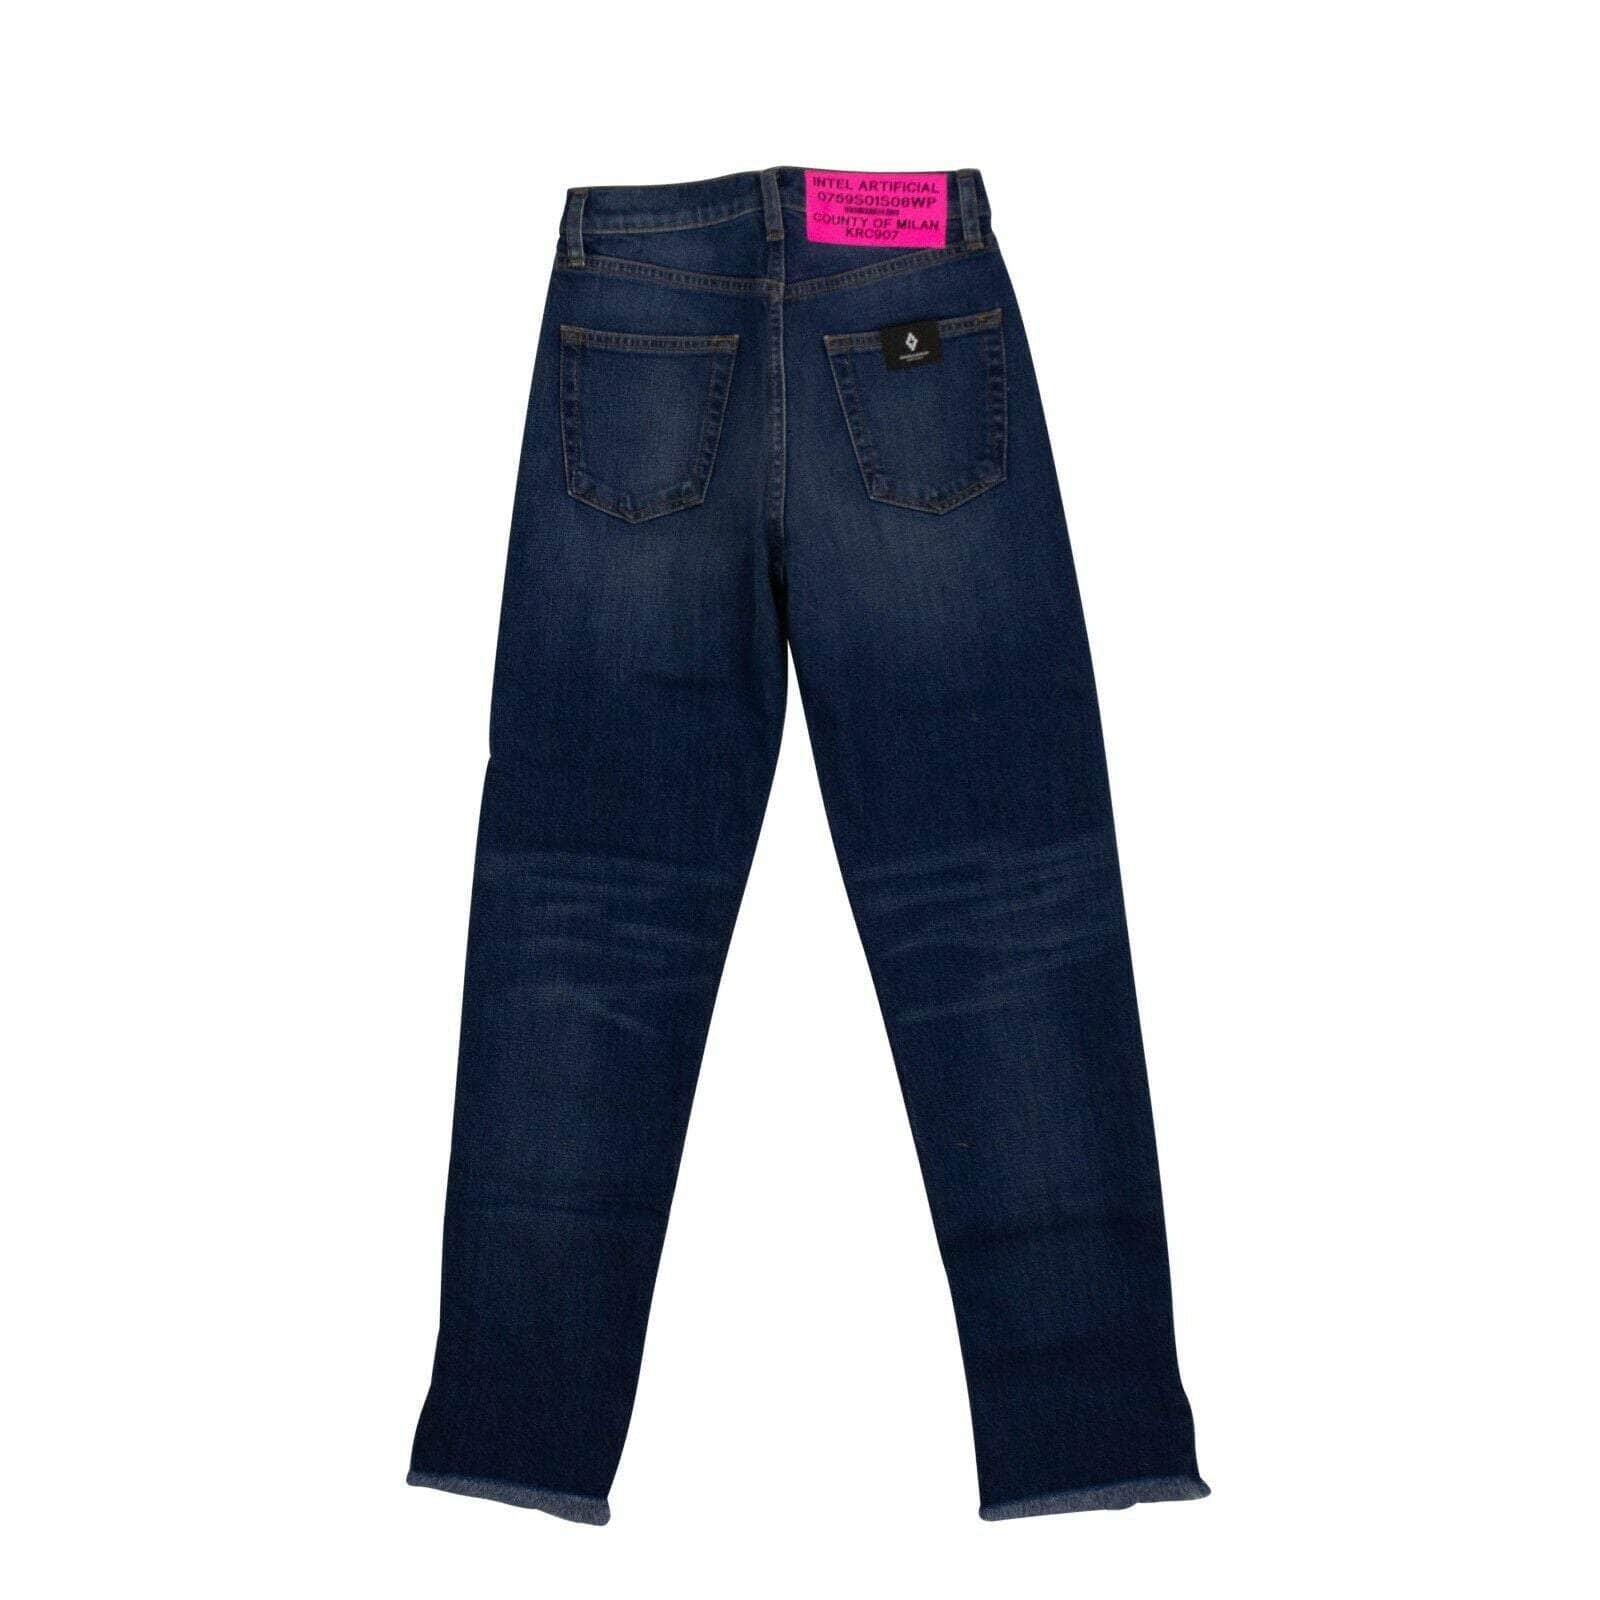 Marcelo Burlon Women's Jeans Denim Vintage Two-Tone Slim Jeans - Blue